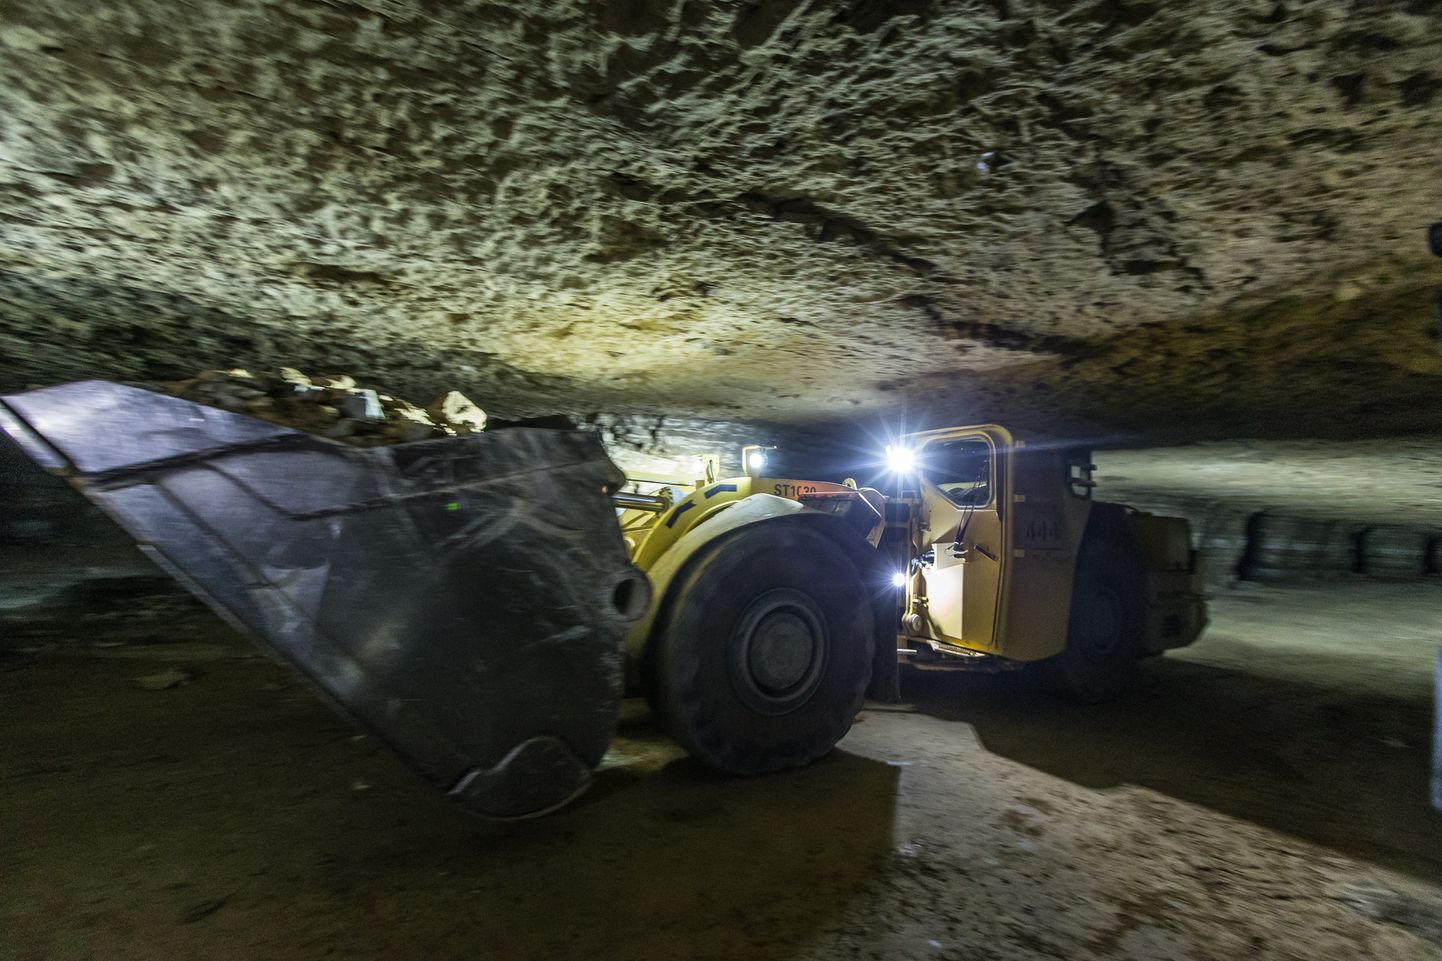 На шахте "Estonia" движение техники очень интенсивное, поэтому там действуют свои правила движения, как и в наземном дорожном движении.